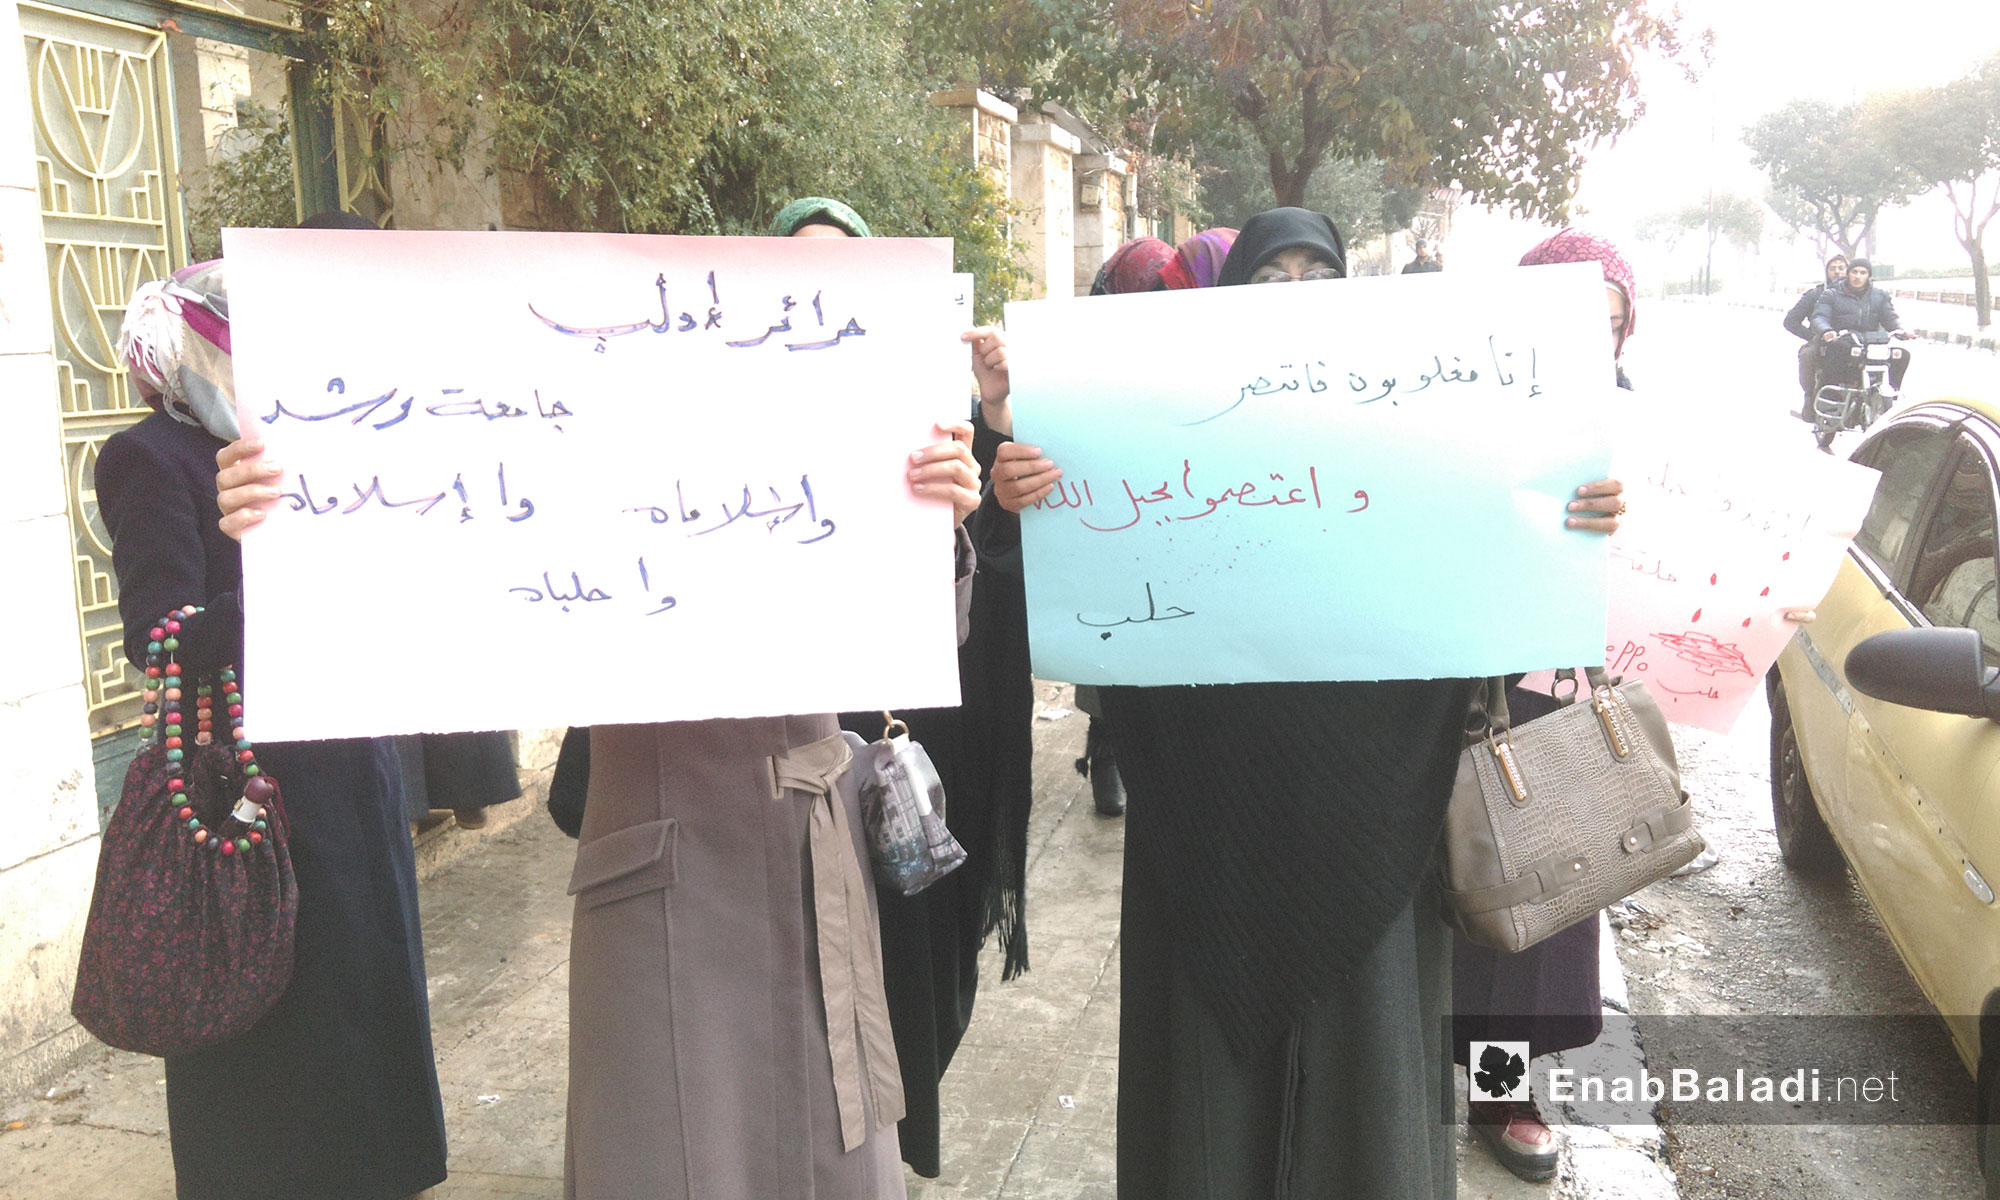 اعتصام لطالبات من جامعة رشد ونساء من منظمة بارقة أمل في ادلب - 13 كاون الأول 2016 (عنب بلدي)